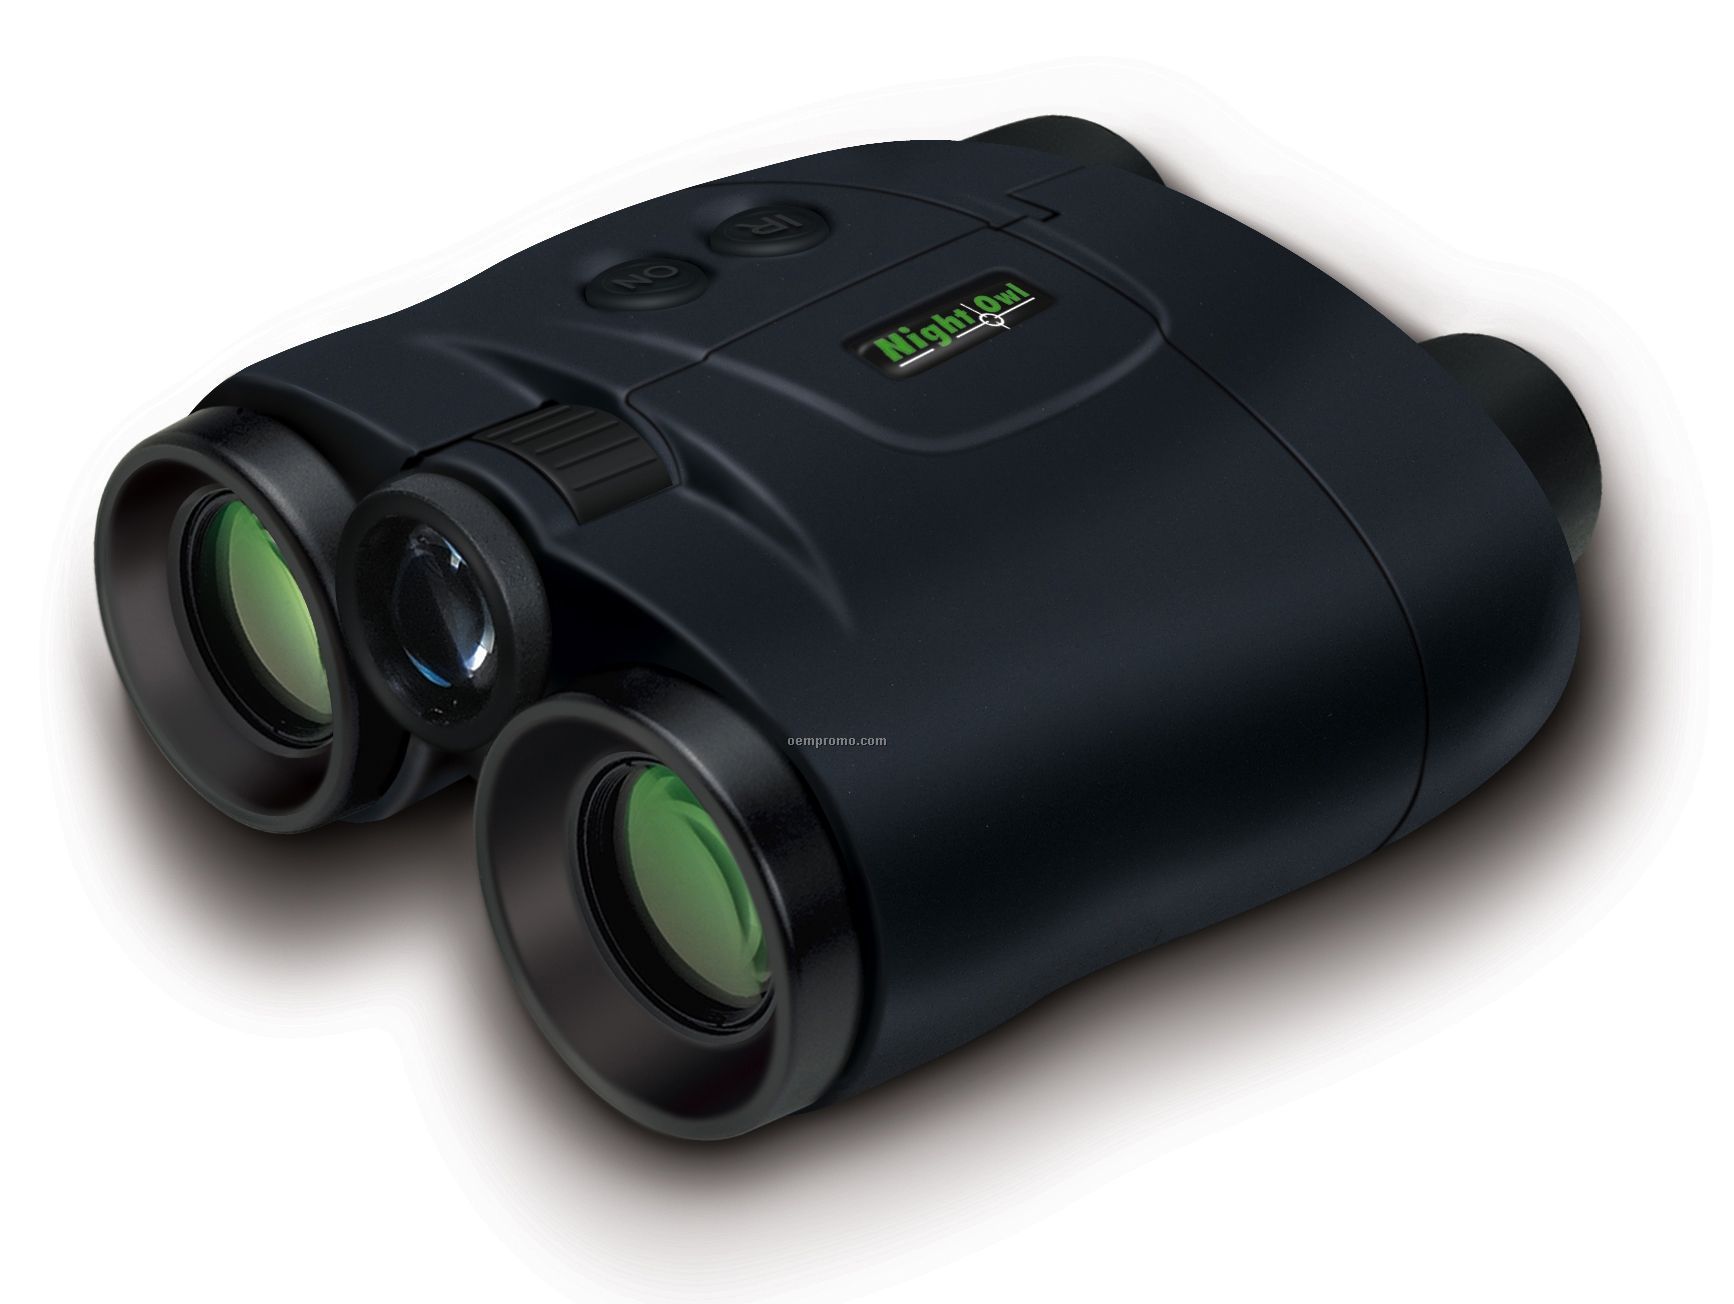 ishare night vision binoculars